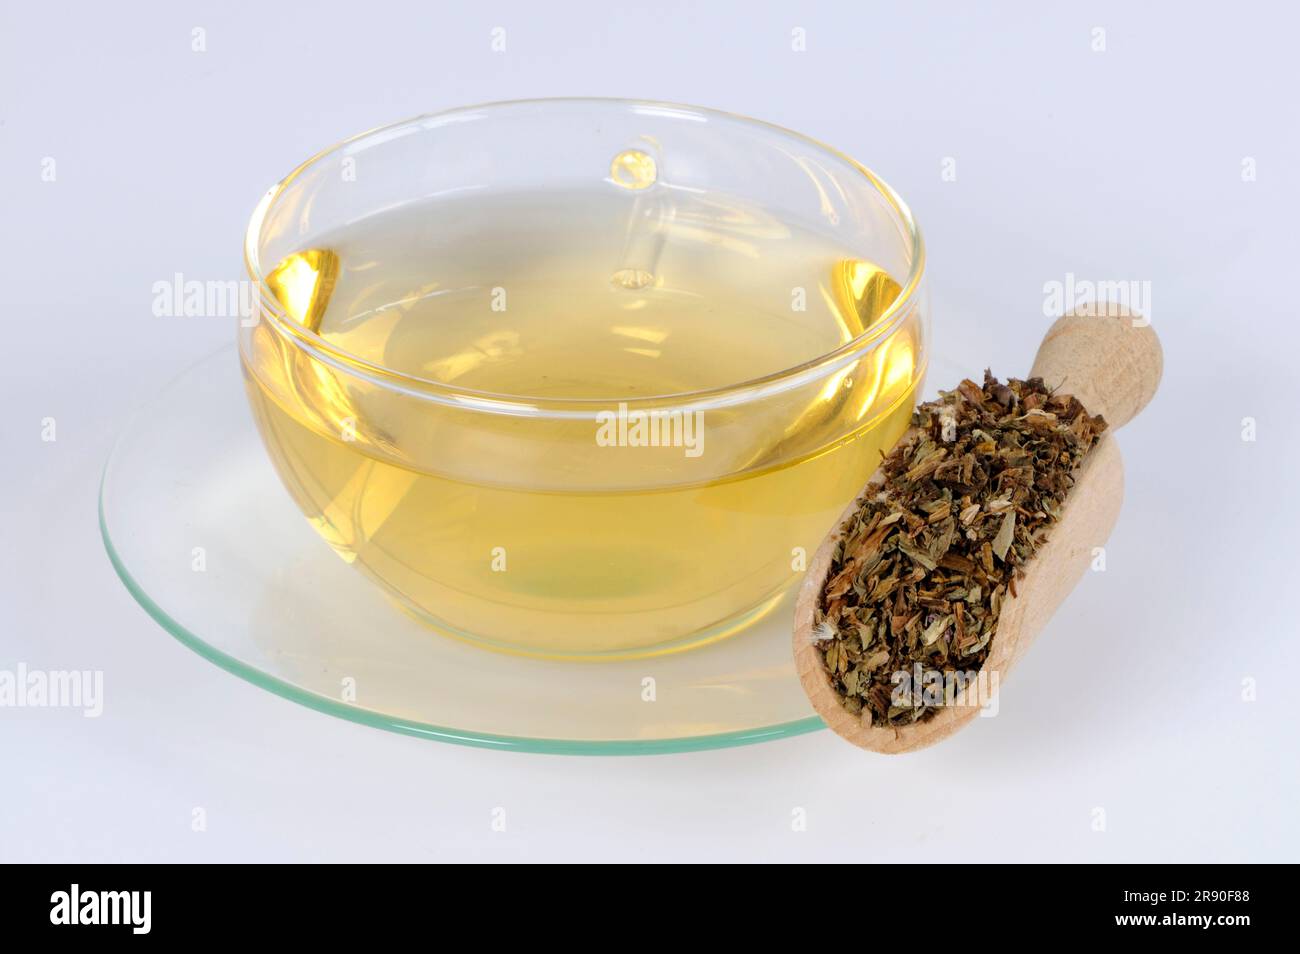 Mongolian Dandelion Herb, Cup of Dandelion Herb Tea (Taraxaci Herba), Pu Gong Ying, Dandelion Herb Tea, Loew Dandelion Herb Tea Stock Photo